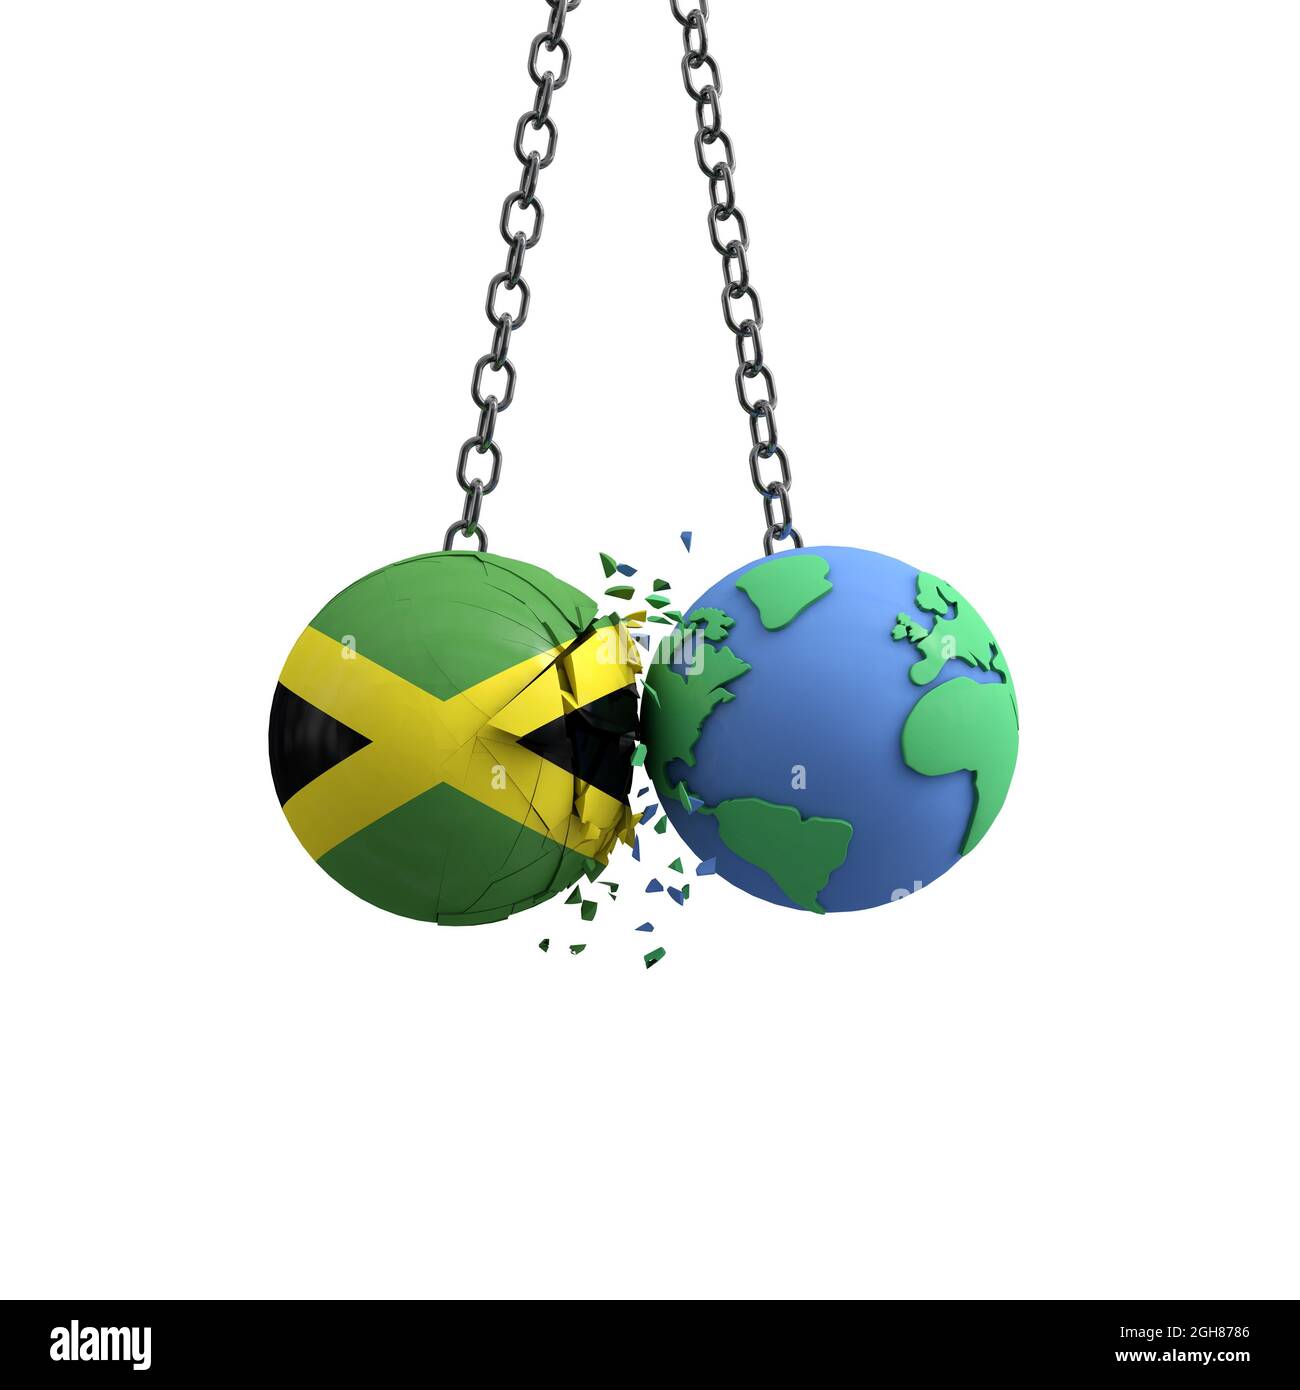 Le drapeau de la Jamaïque frappe la planète terre. Concept d'impact sur l'environnement. Rendu 3D Banque D'Images